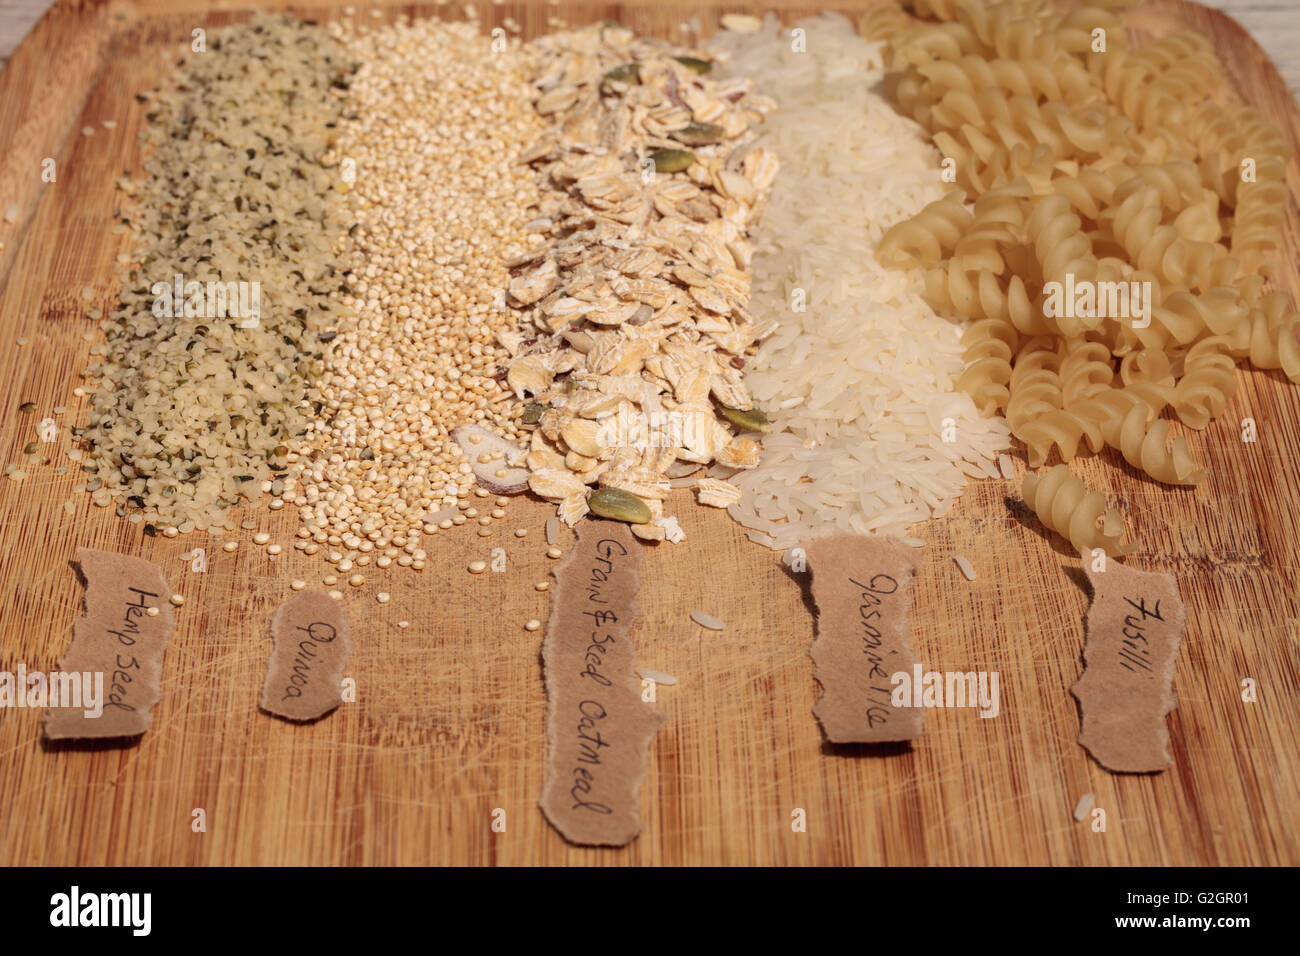 Plusieurs céréales biologiques, y compris les fusilli, riz au jasmin, quinoa, graines de chanvre, et un mélange de grains et graines d'avoine, sur une Banque D'Images